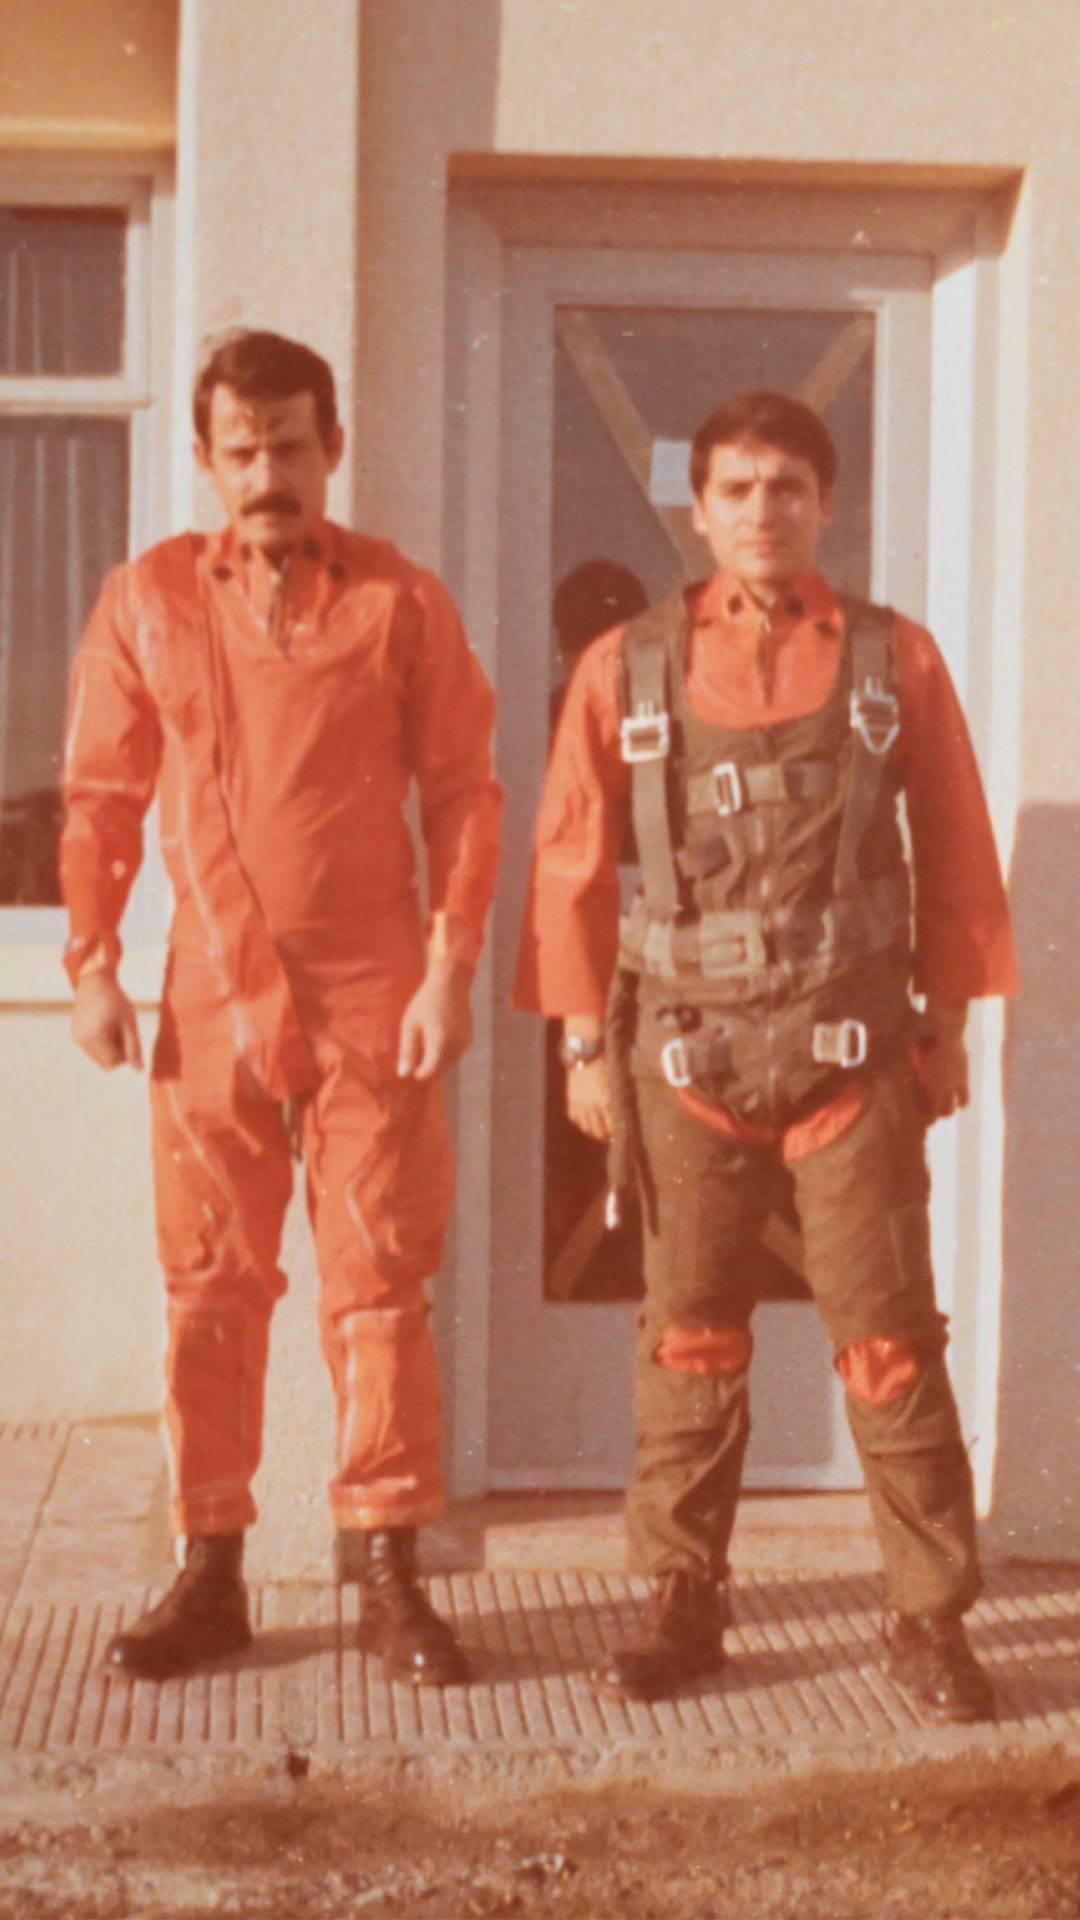 Rubén Ureta y Gerardo Isaac fueron dos de los pilotos de la Fuerza Aérea que participaron de la misión y que pudieron salir con vida, luego del ataque al portaaviones. (Gentileza R.U.)